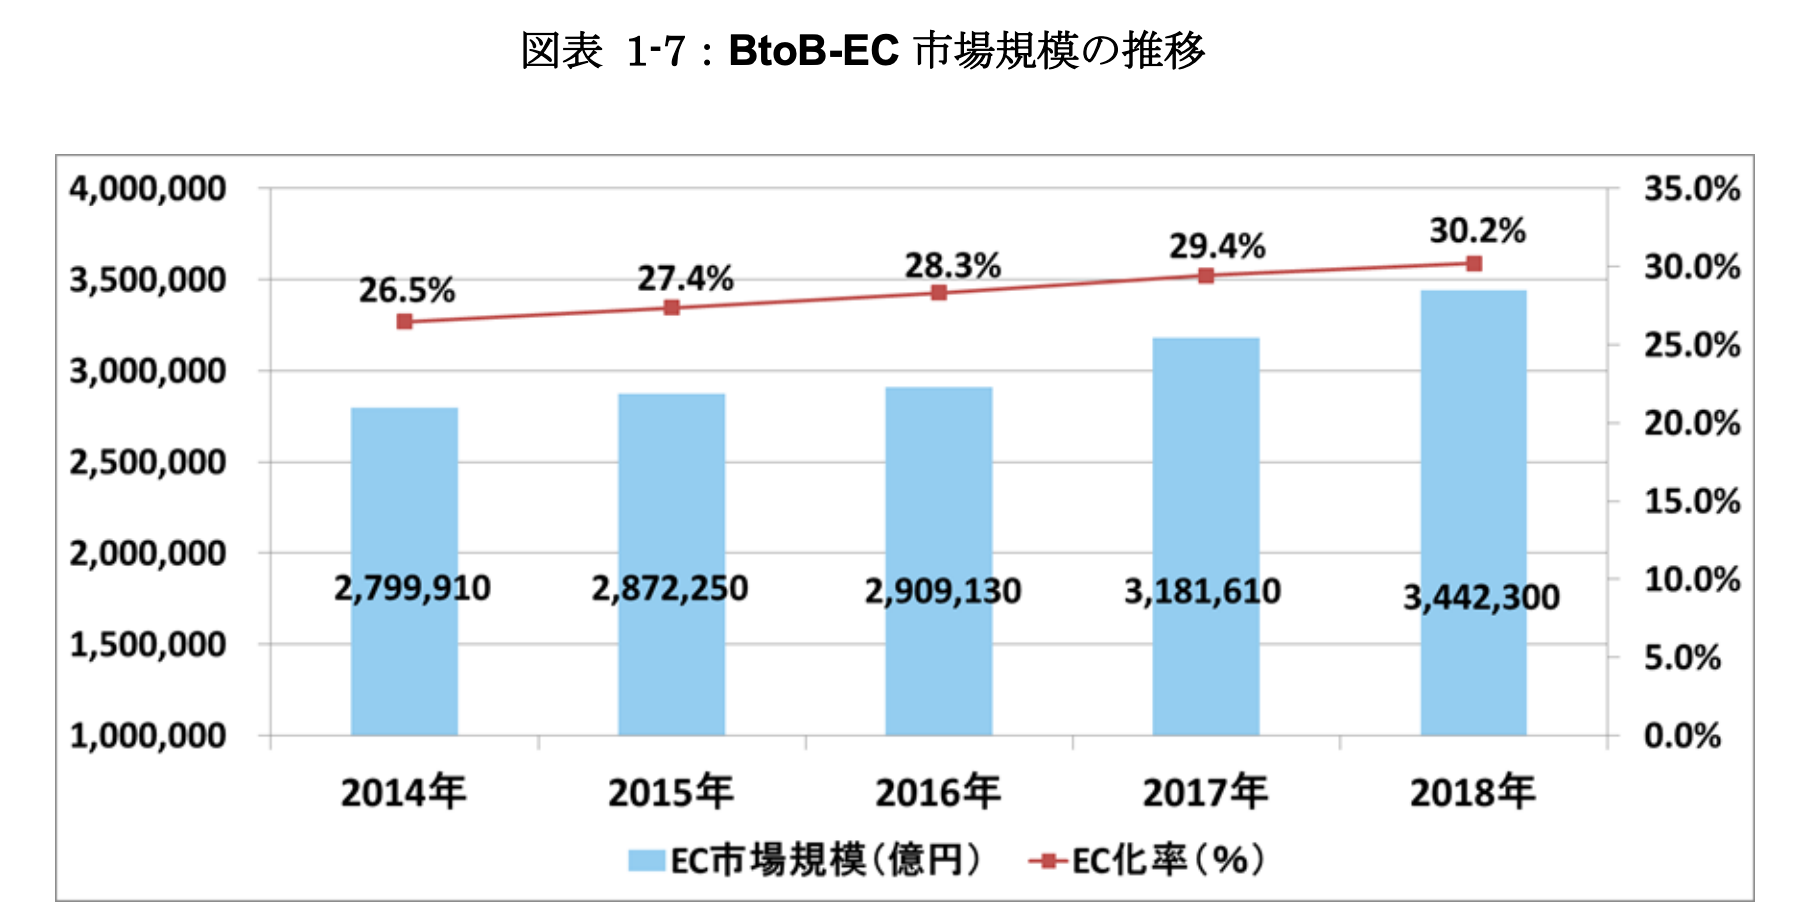 日本のBtoB-EC市場規模の推移